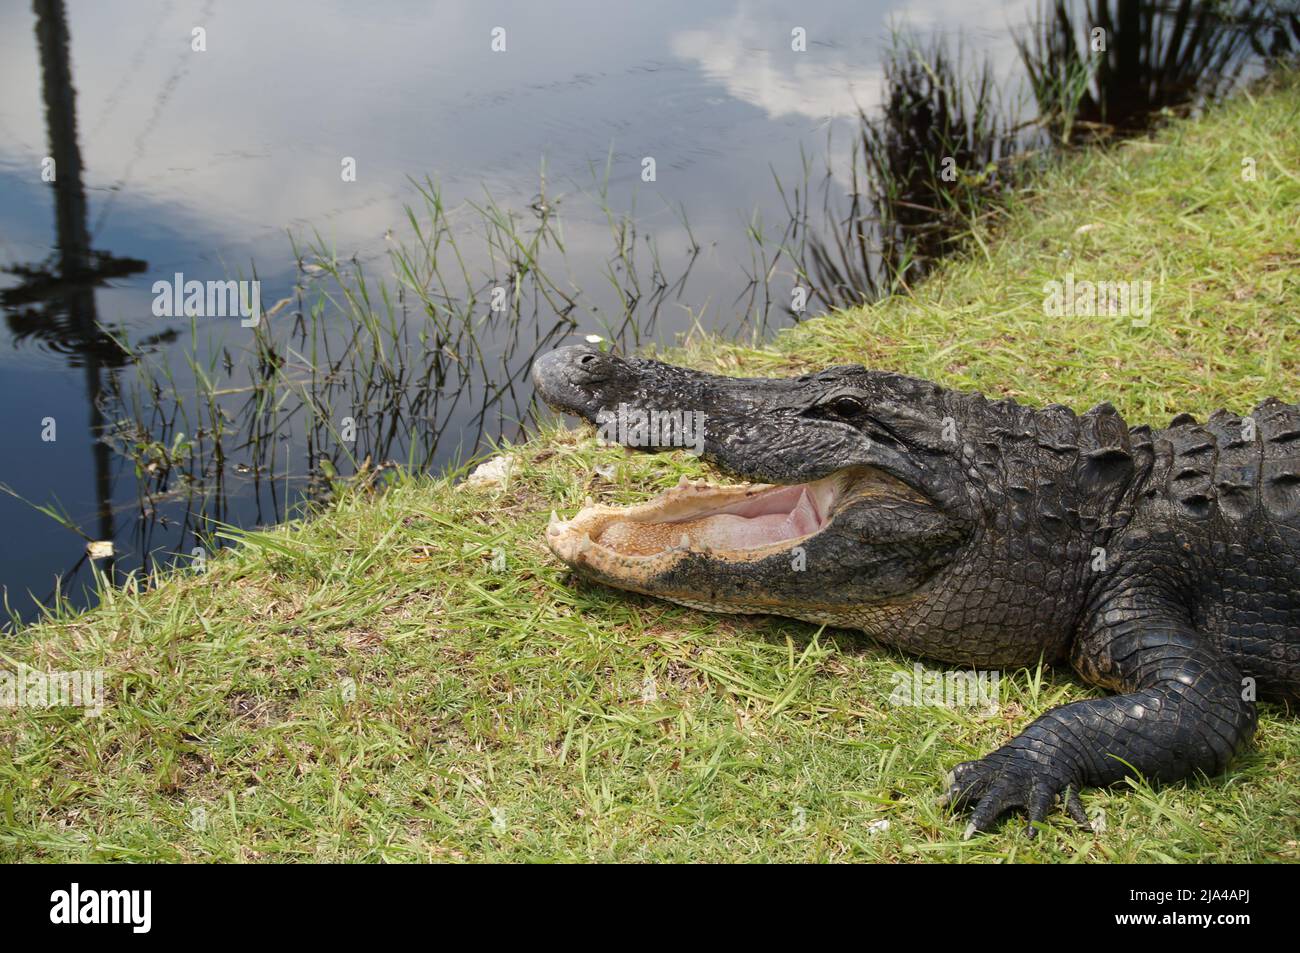 Natur der Wunder Krokodil Krokodile sind an eine amphibische Lebensweise angepasst. Das heißt, sie können sowohl im Wasser als auch auf dem Land leben Foto de stock